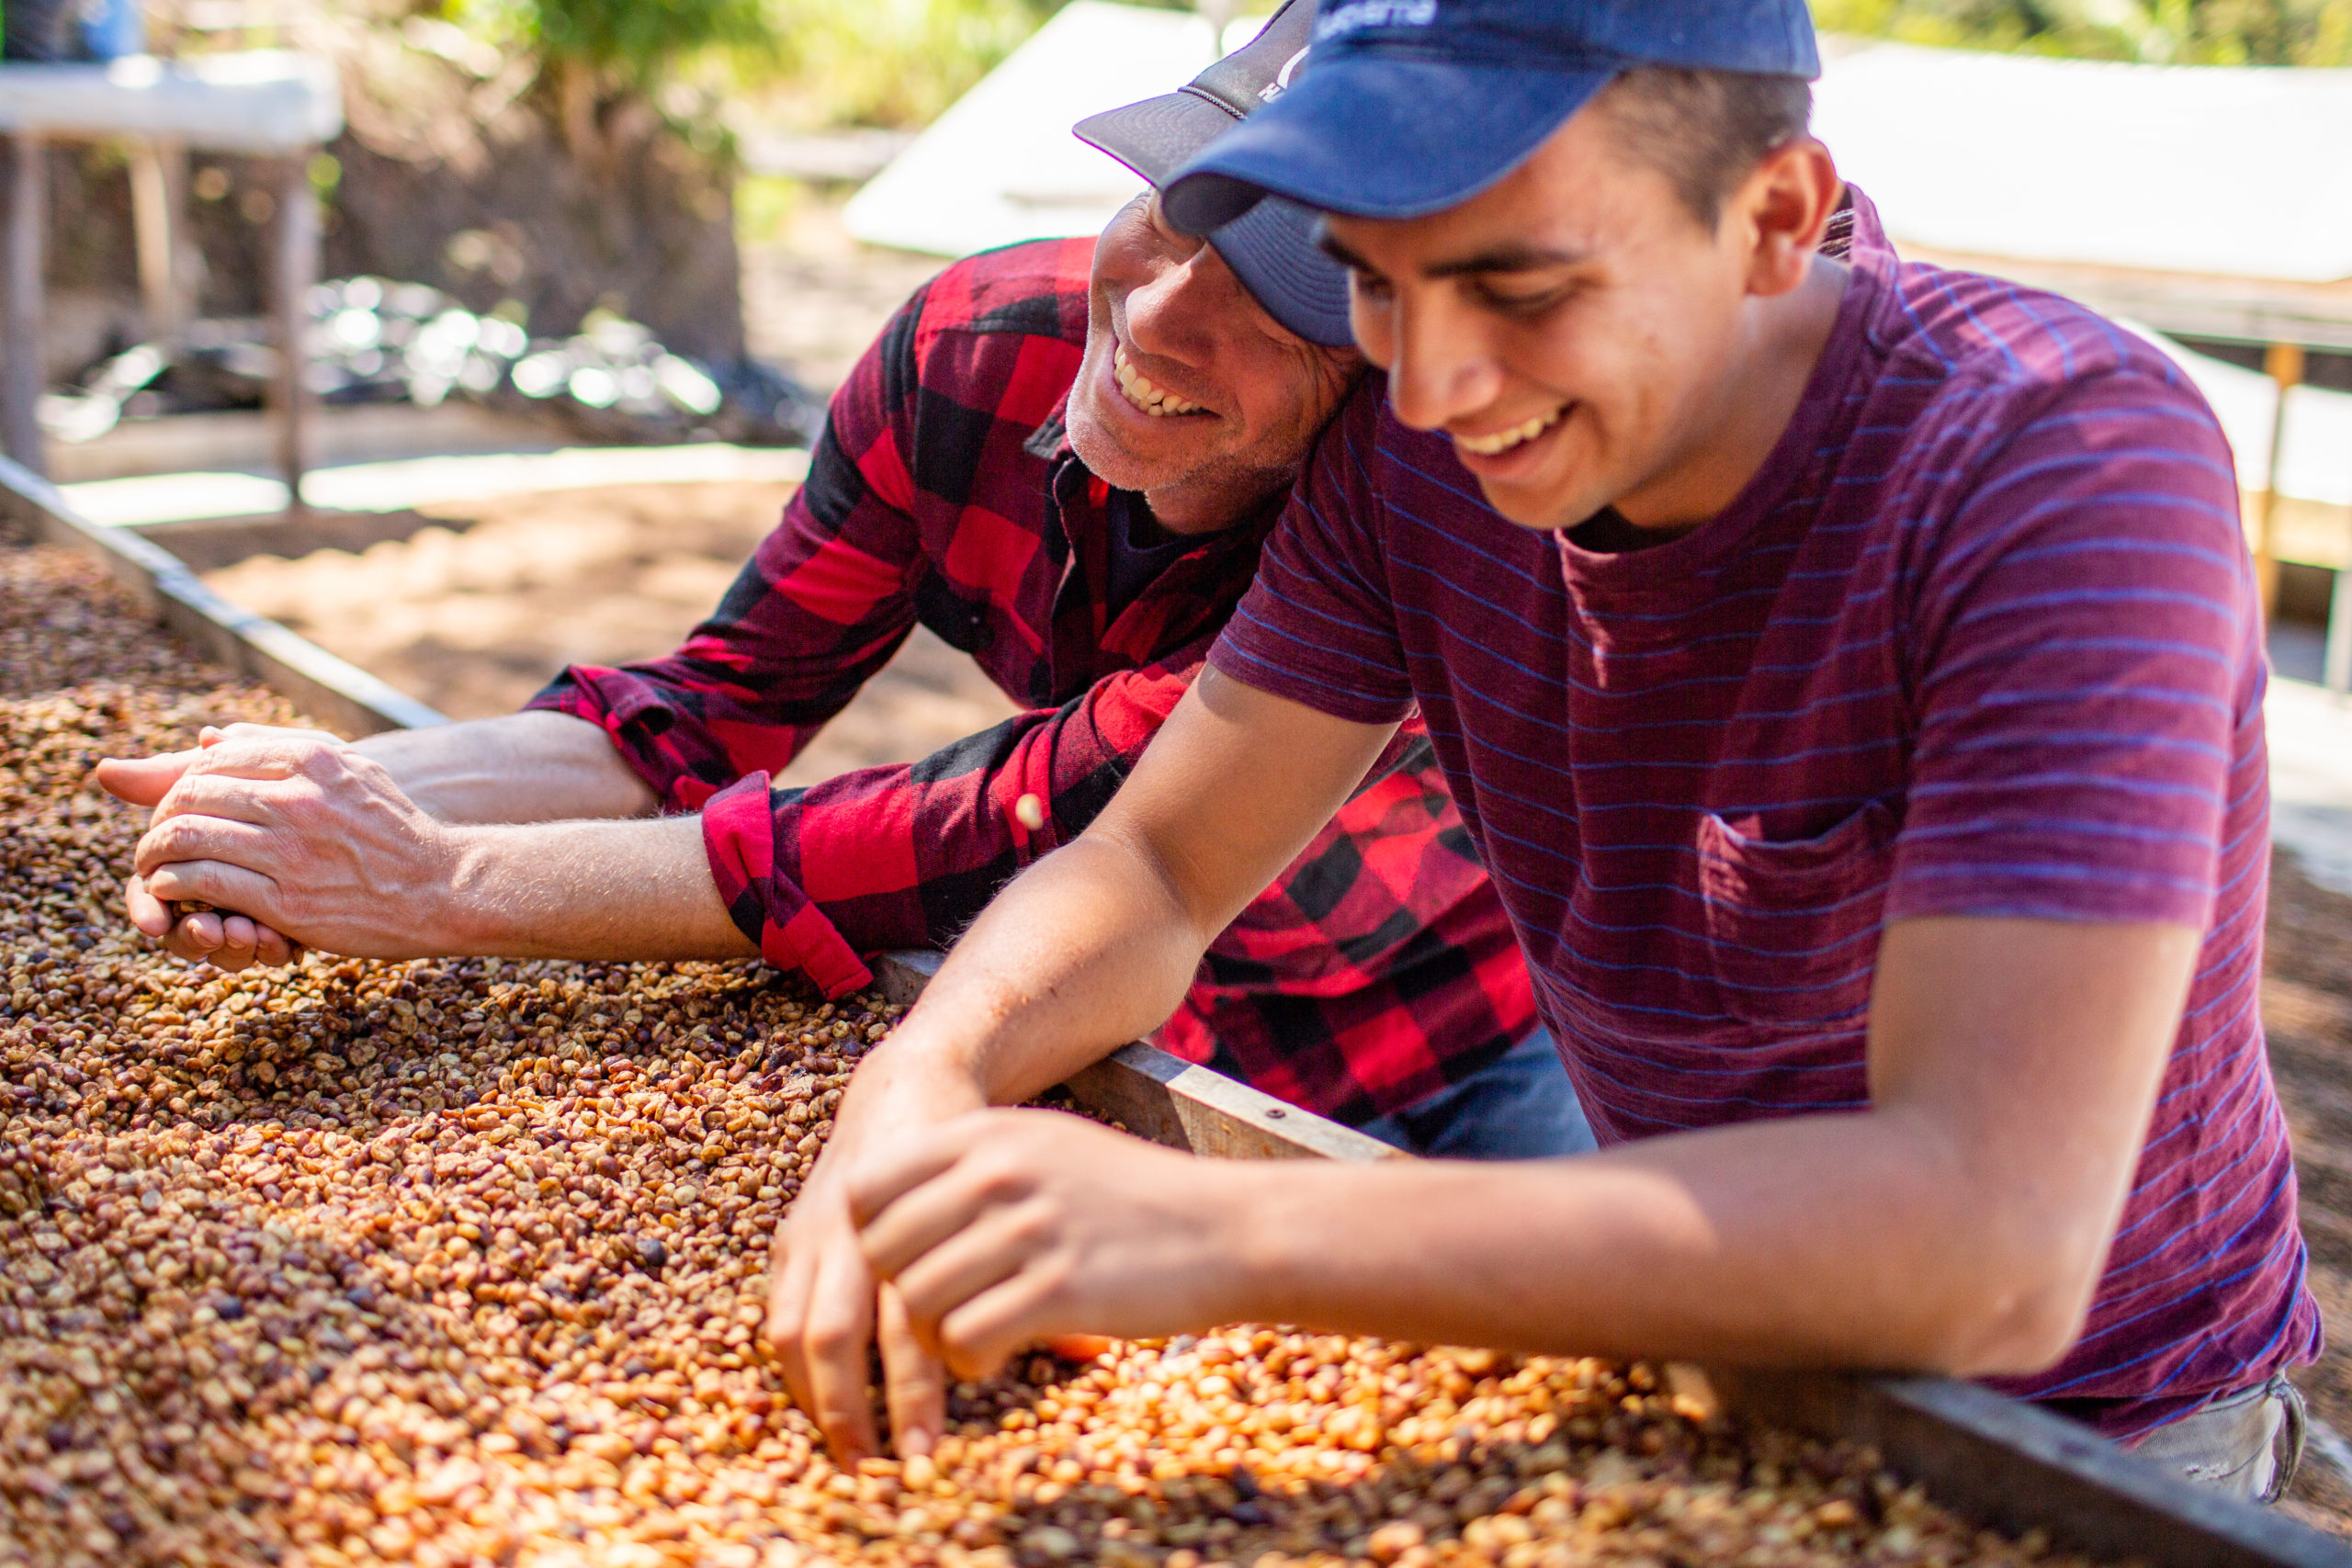 Coffee bean farming